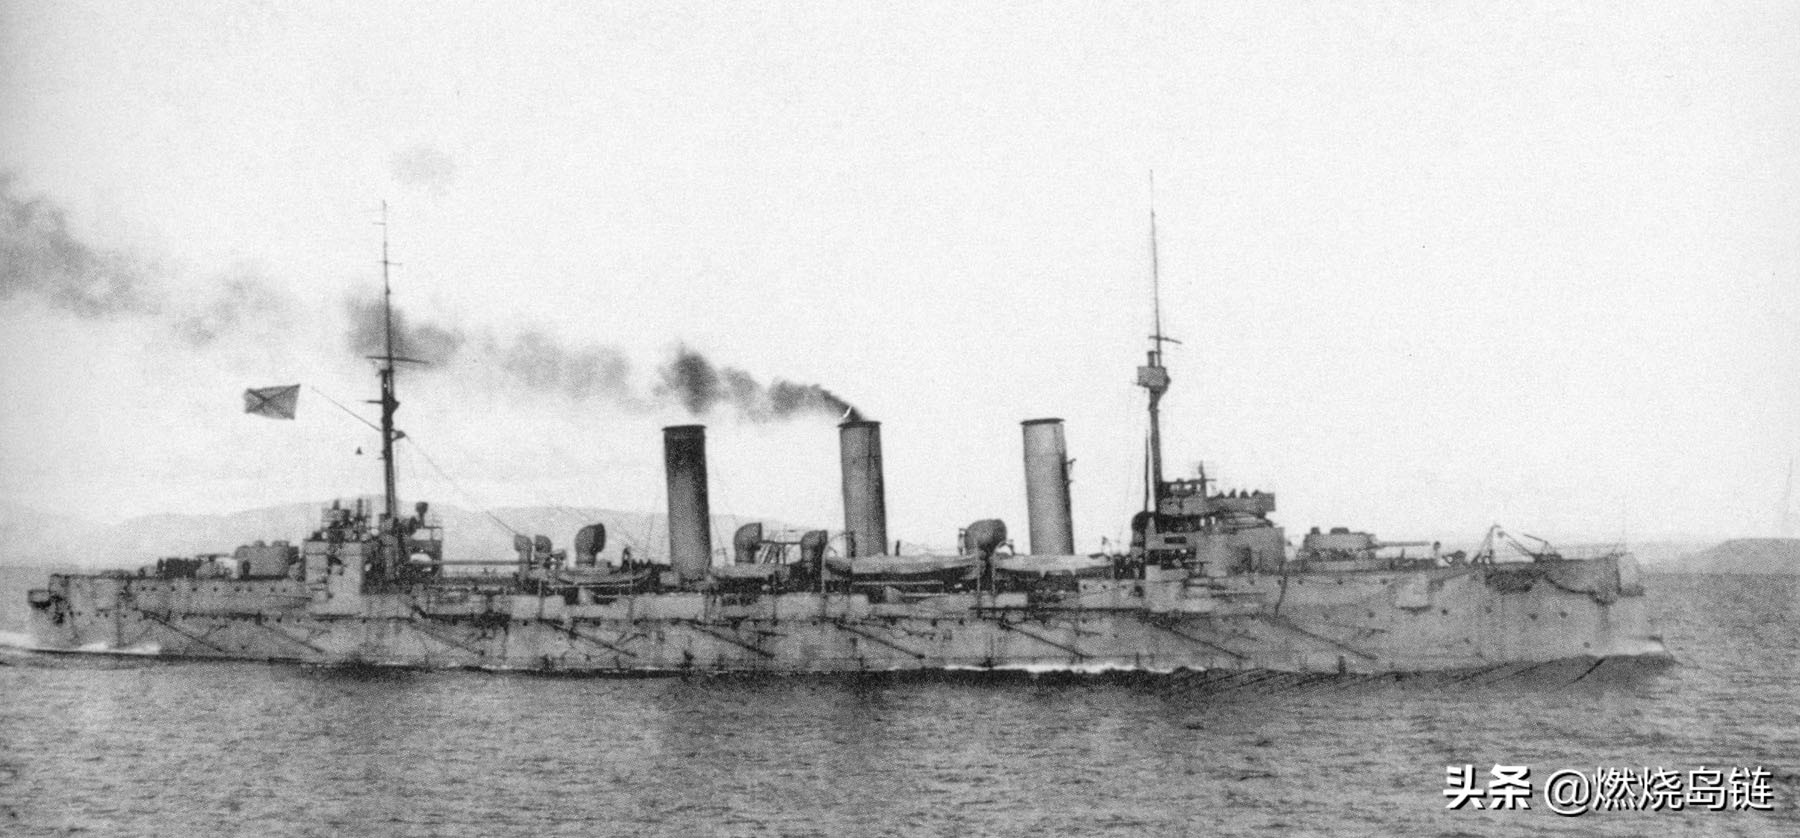 万吨以上的装甲巡洋舰以及次时代的轻巡洋舰